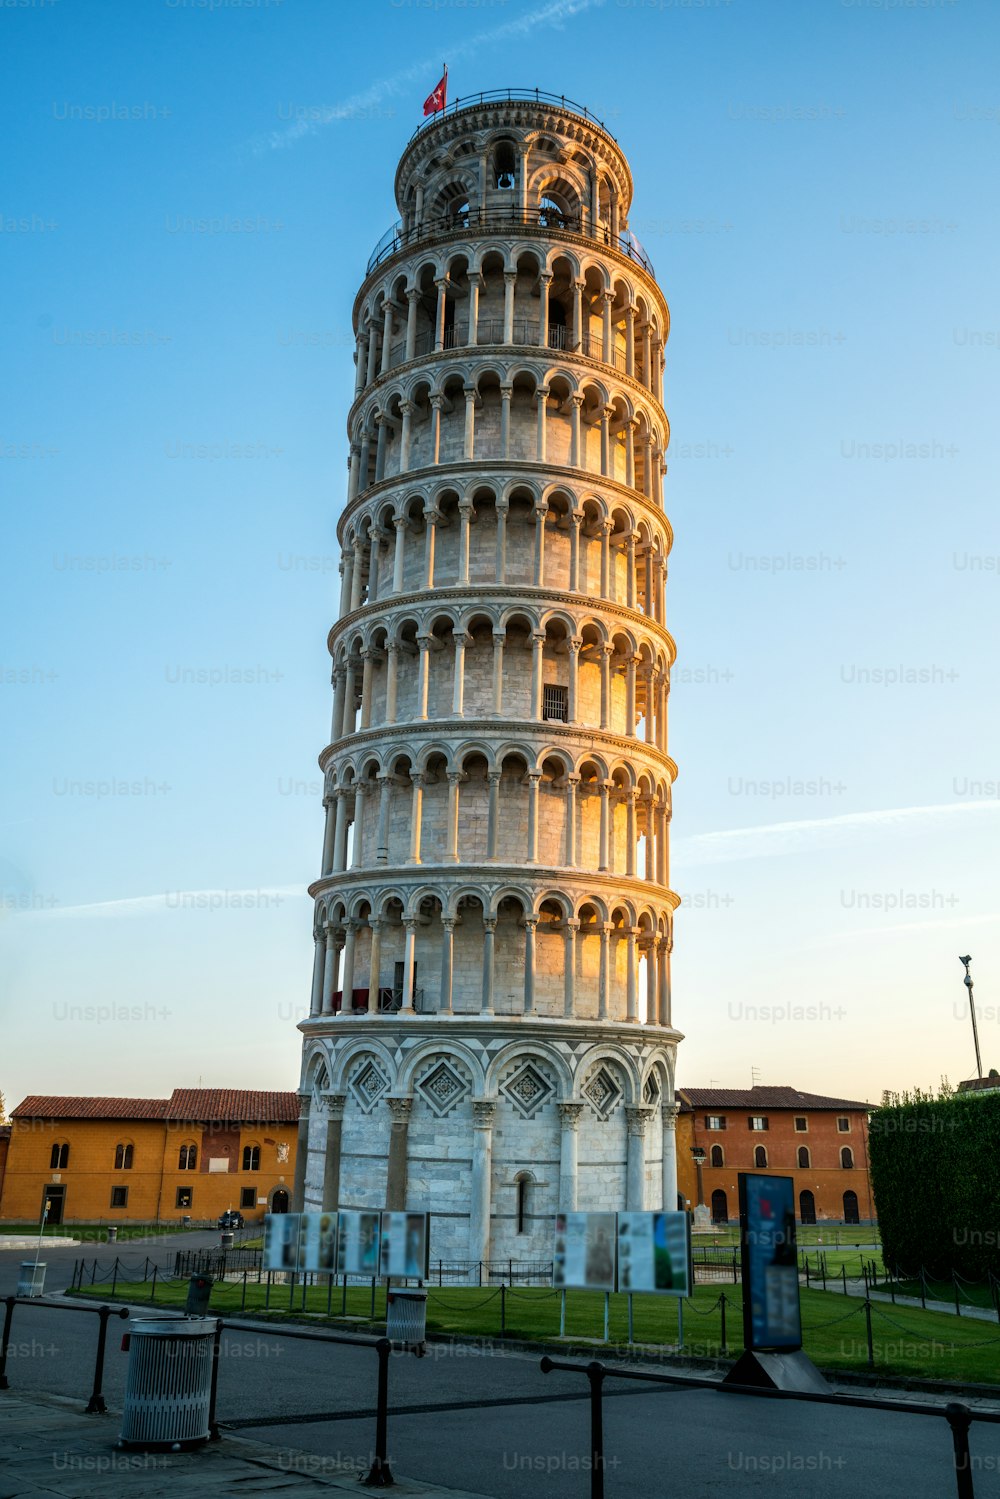 Torre inclinada de Pisa en Pisa, Italia - Torre inclinada de Pisa conocida en todo el mundo por su inclinación involuntaria y su famoso destino de viaje de Italia. Está situado cerca de la Catedral de Pisa.